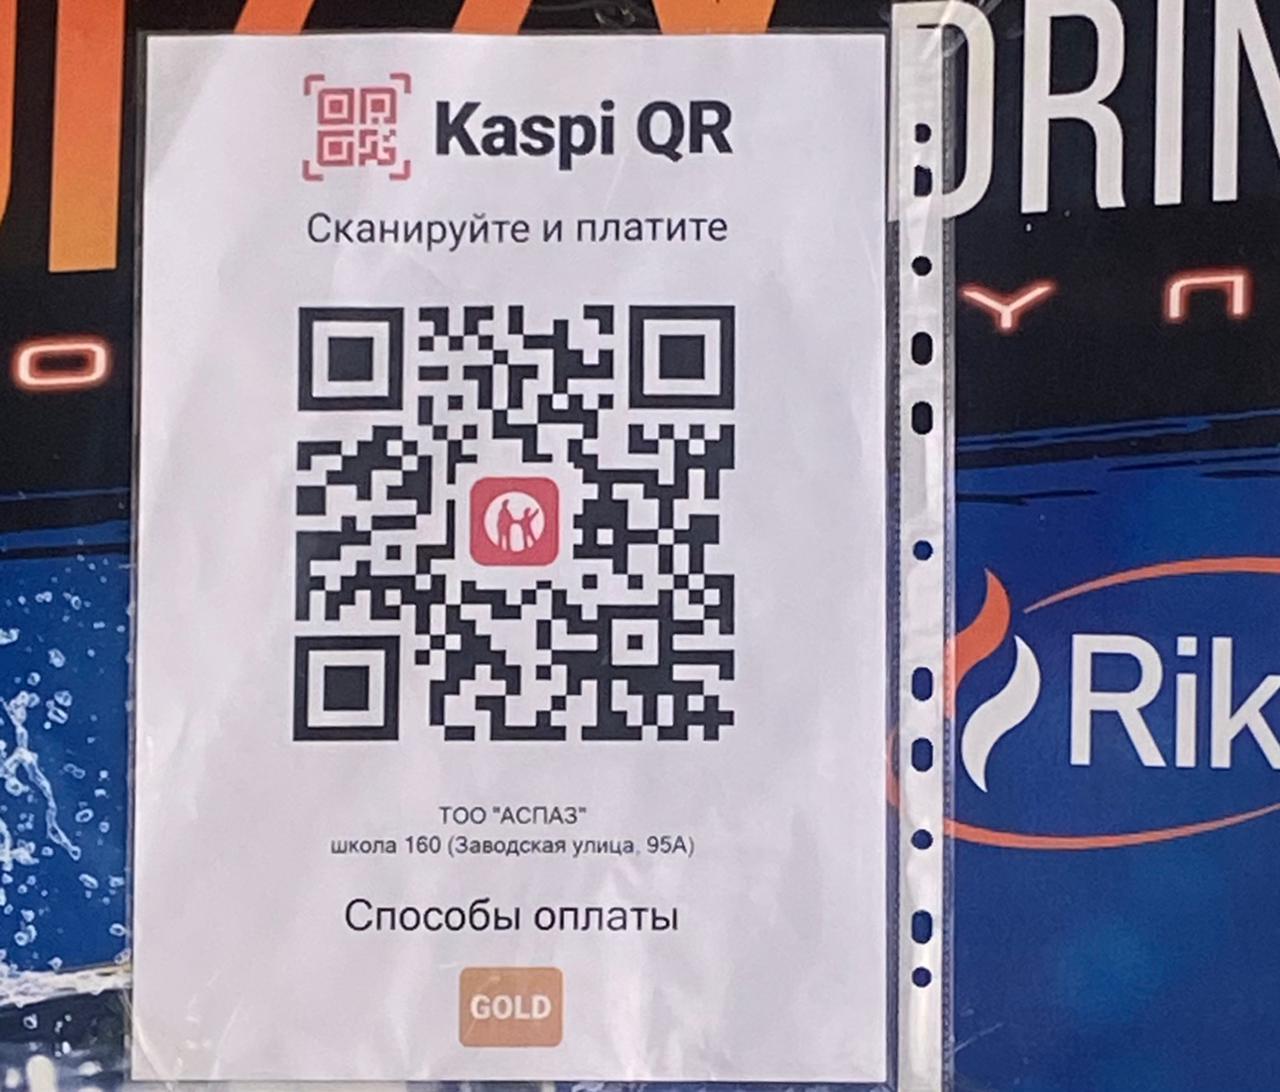 Kaspi QR - ТОО "АСПАЗ"